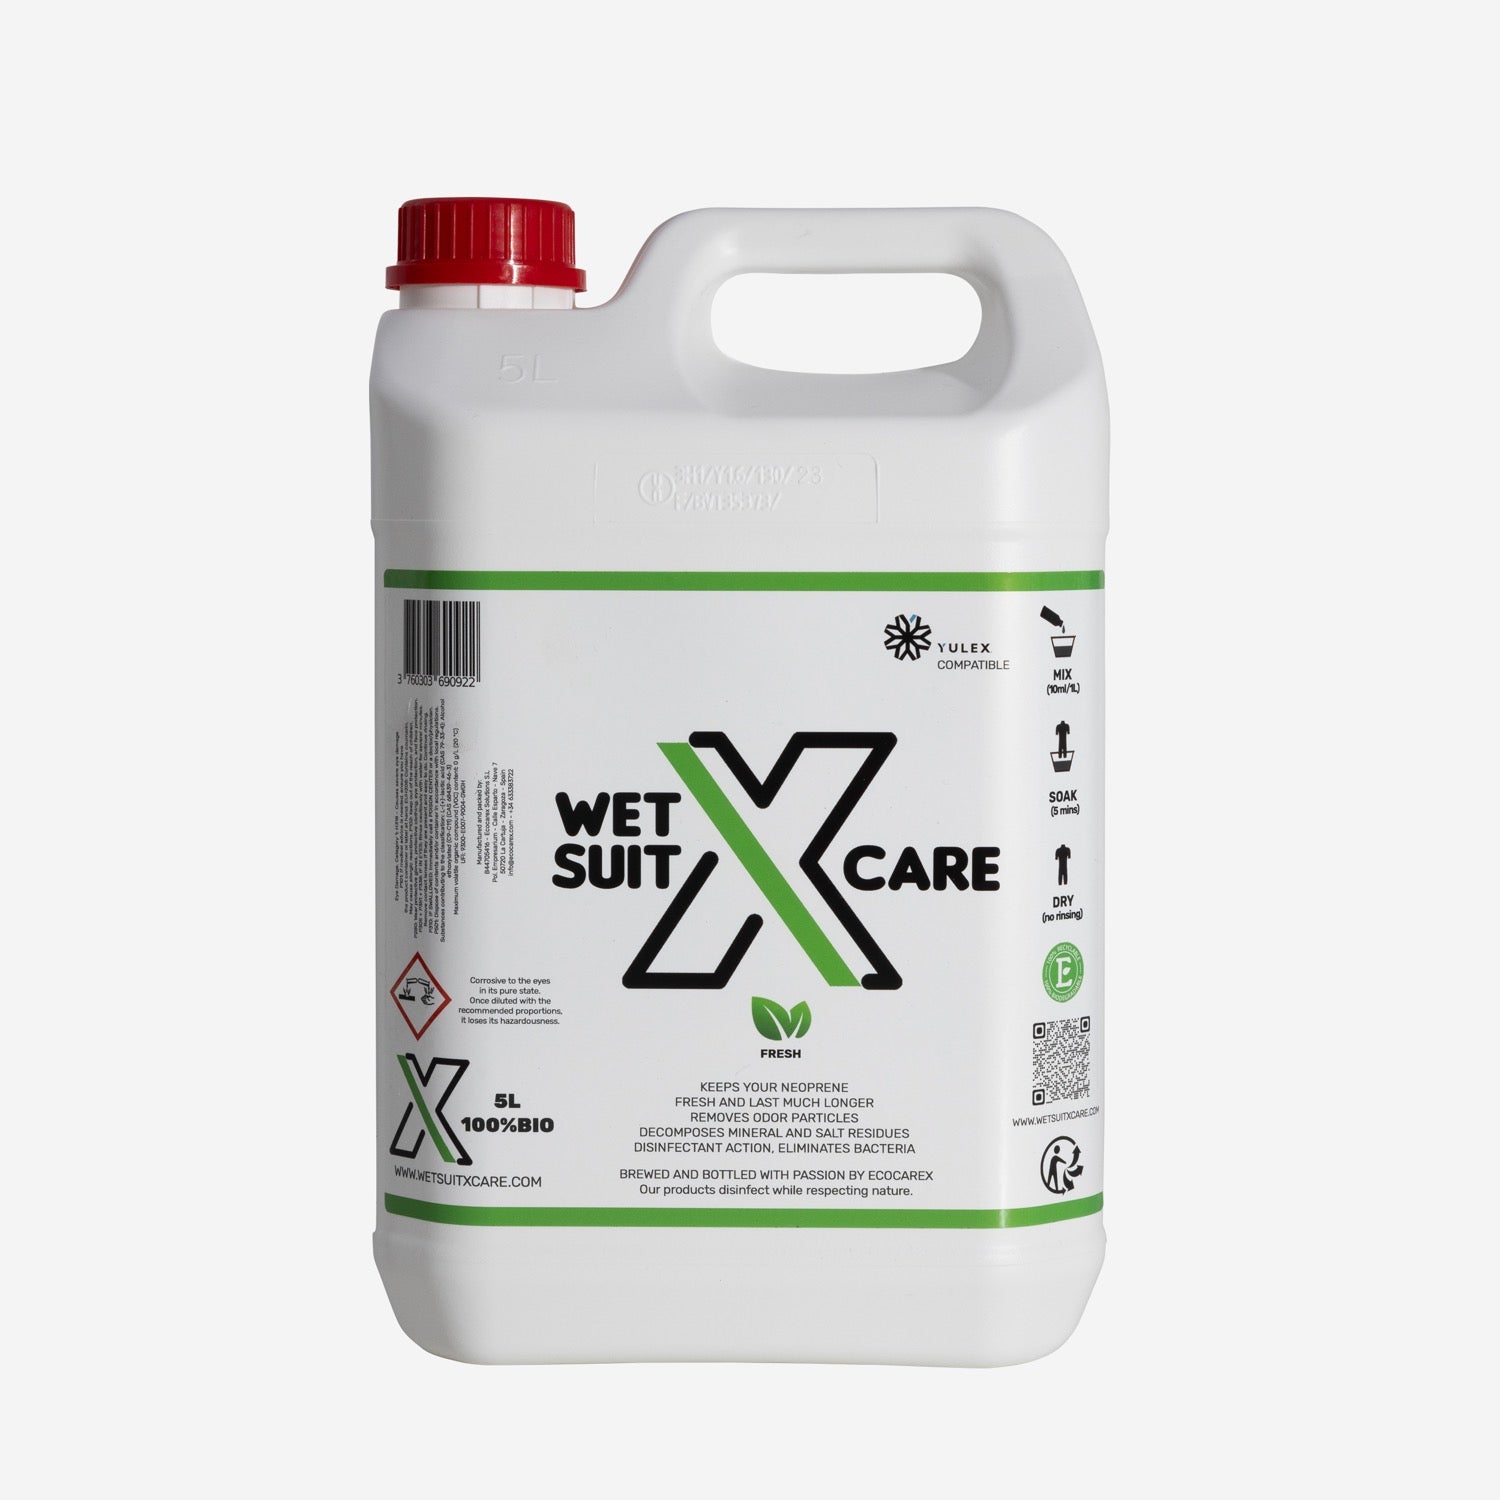 X-Care - Neoprene Shampoo - 5 liter bottle - Fresh fragrance